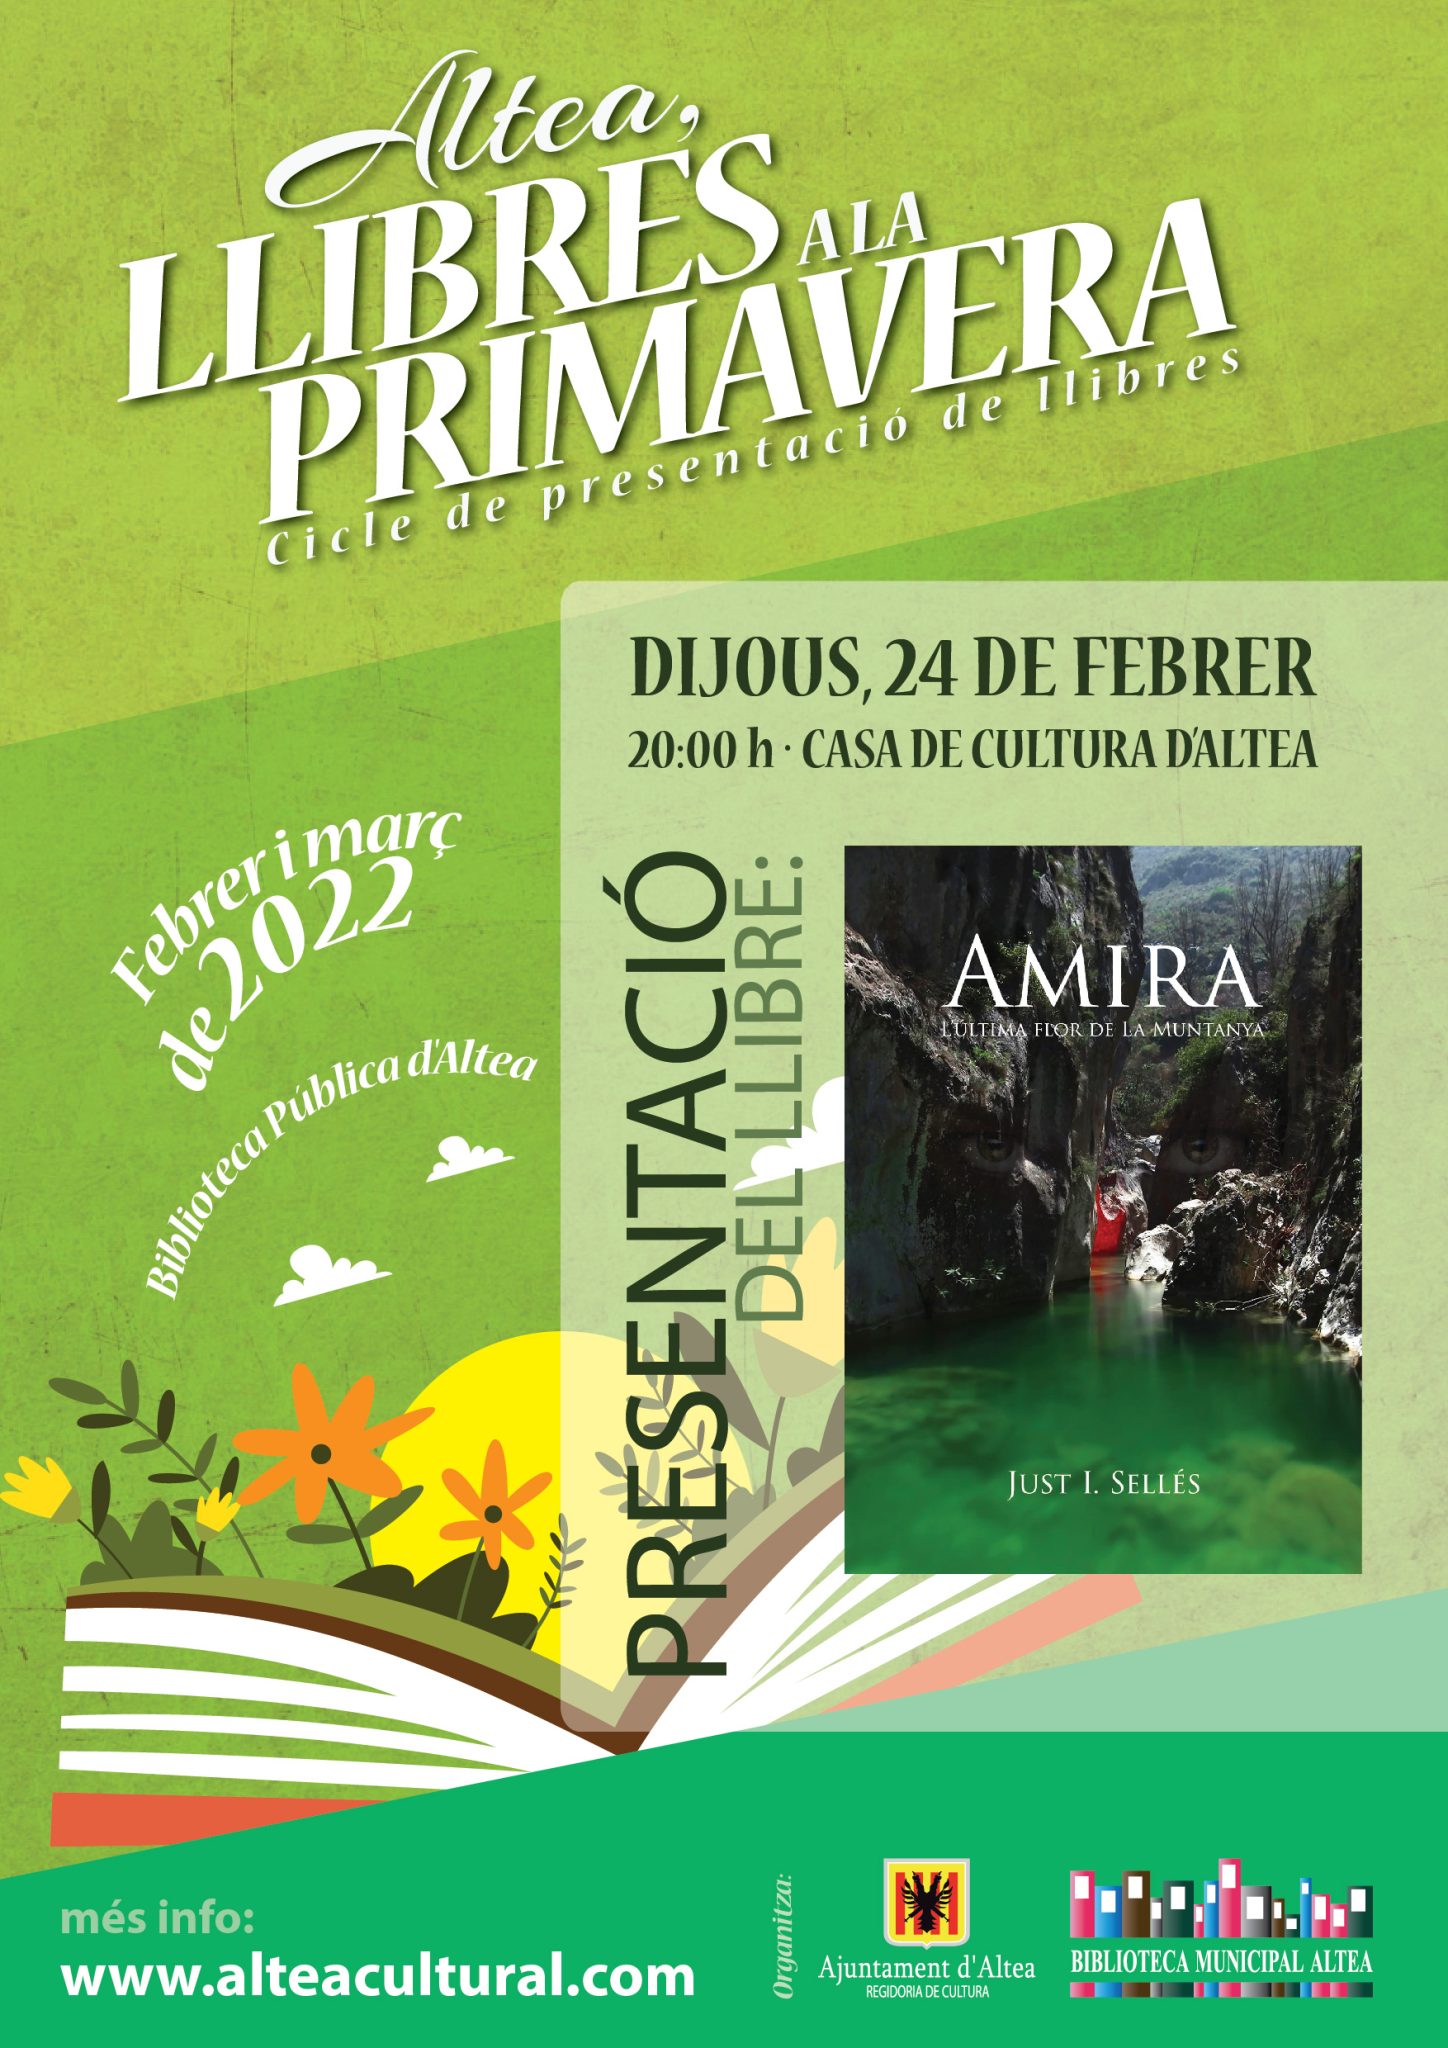 Llibres a la primavera presenta ‘Amira. Ultima flor de la muntanya’ de Just. I. Sellés. Dijous, 24 de febrer a las 20.00 h. Casa de Cultura.